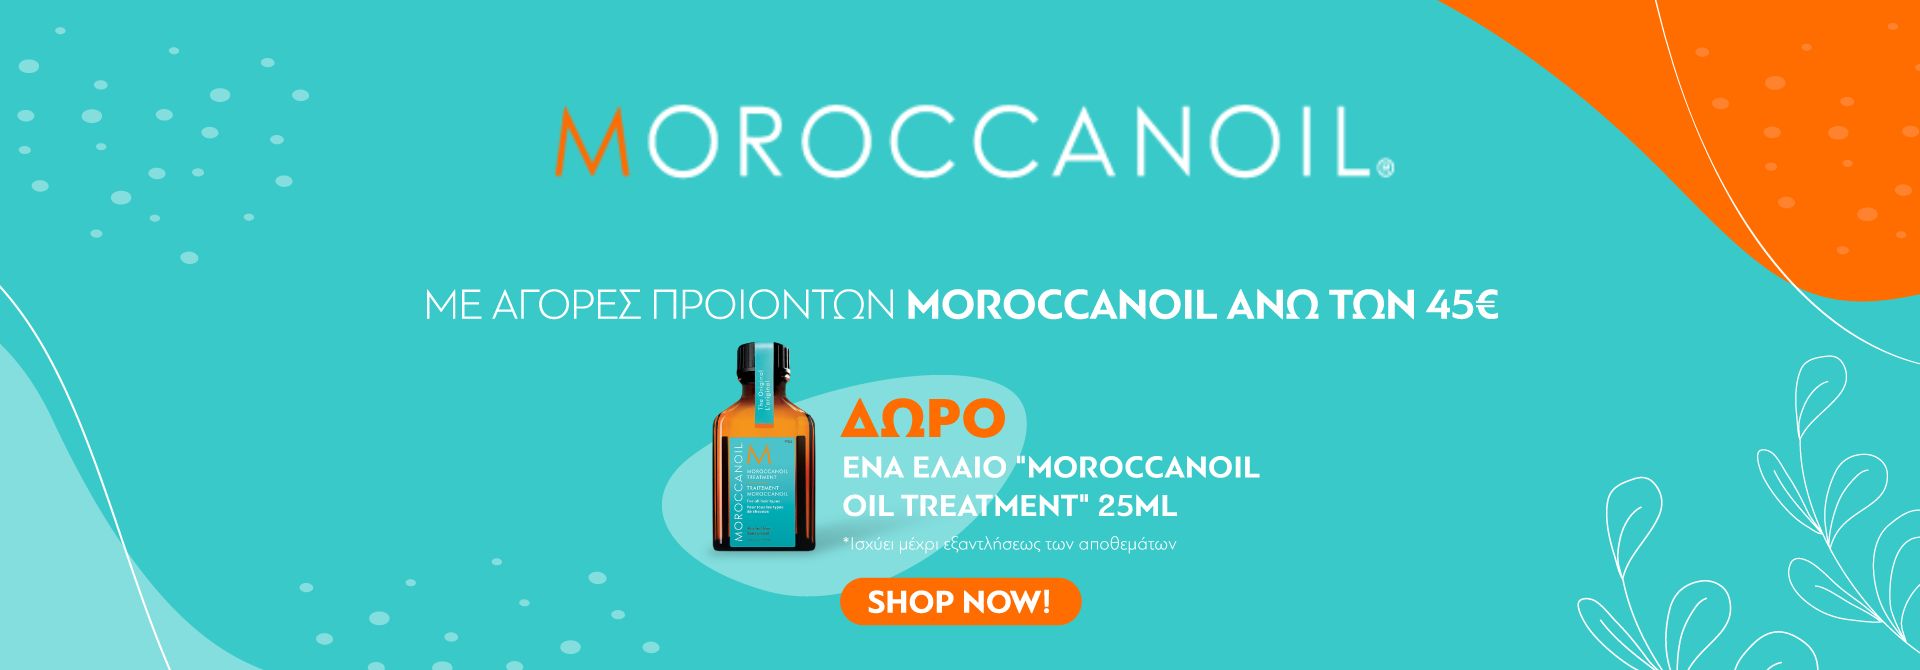 Moroccanoil Offer